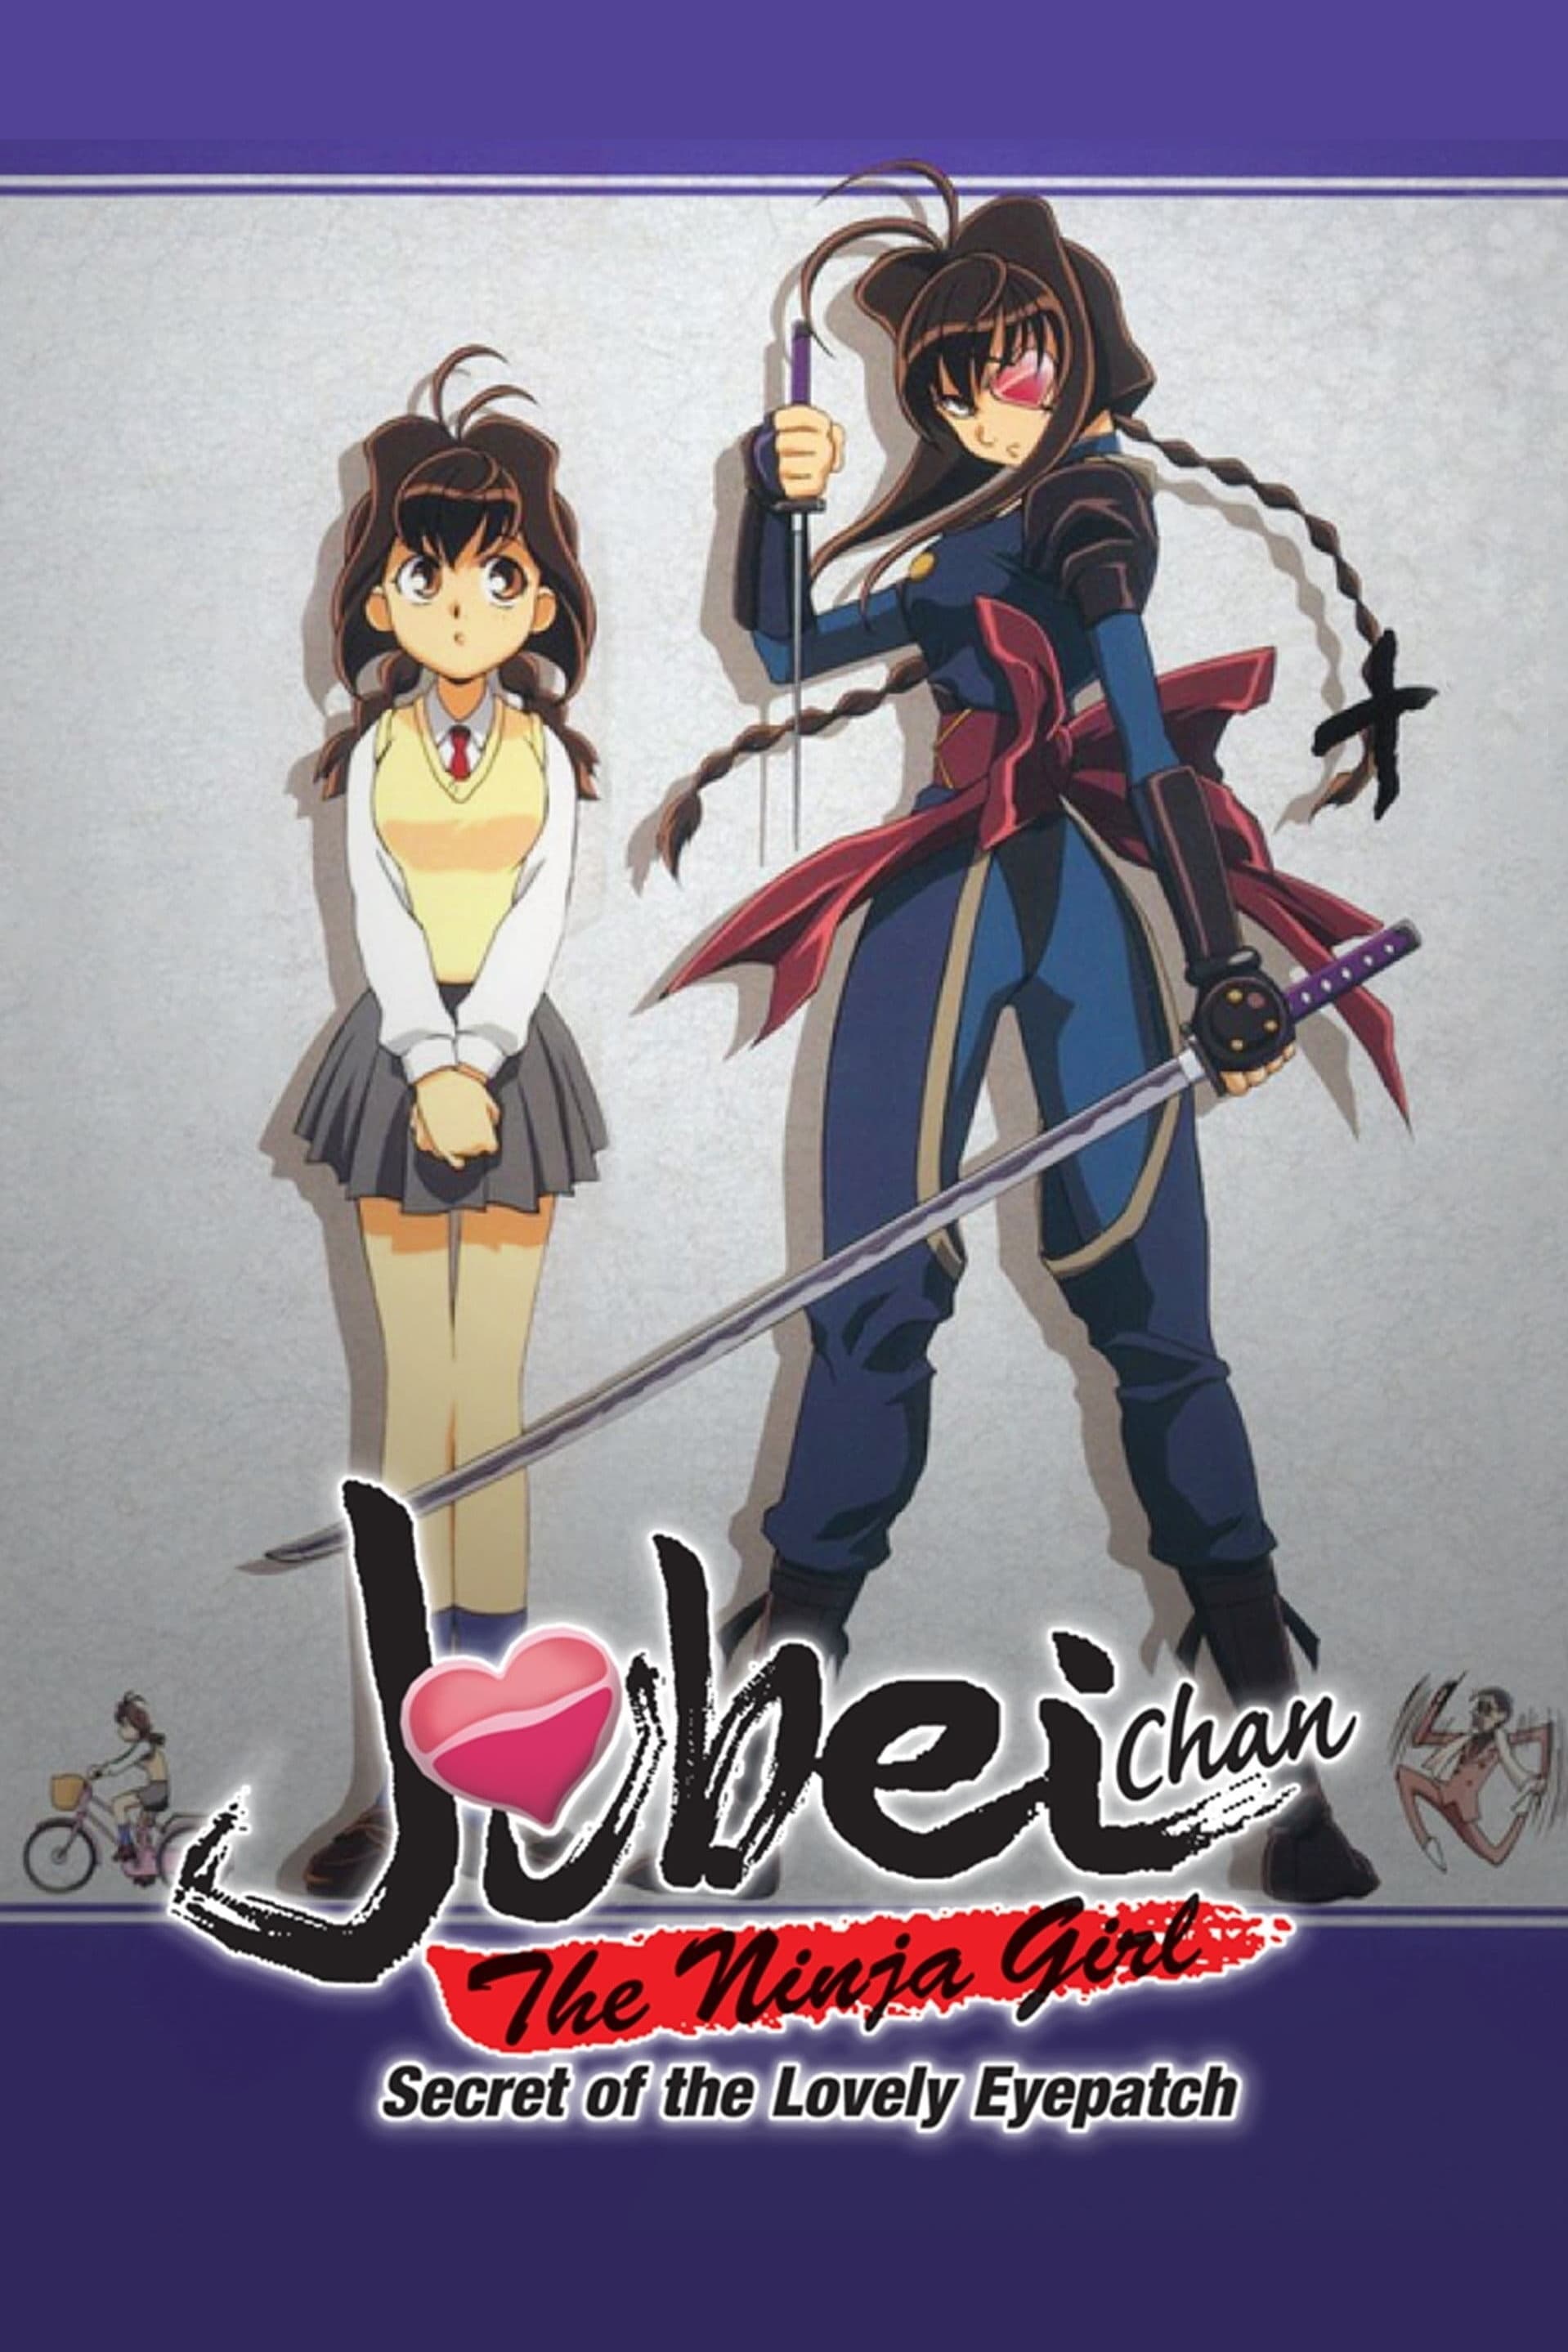 Jubei-chan the Ninja Girl: Secret of the Lovely Eyepatch (1999)